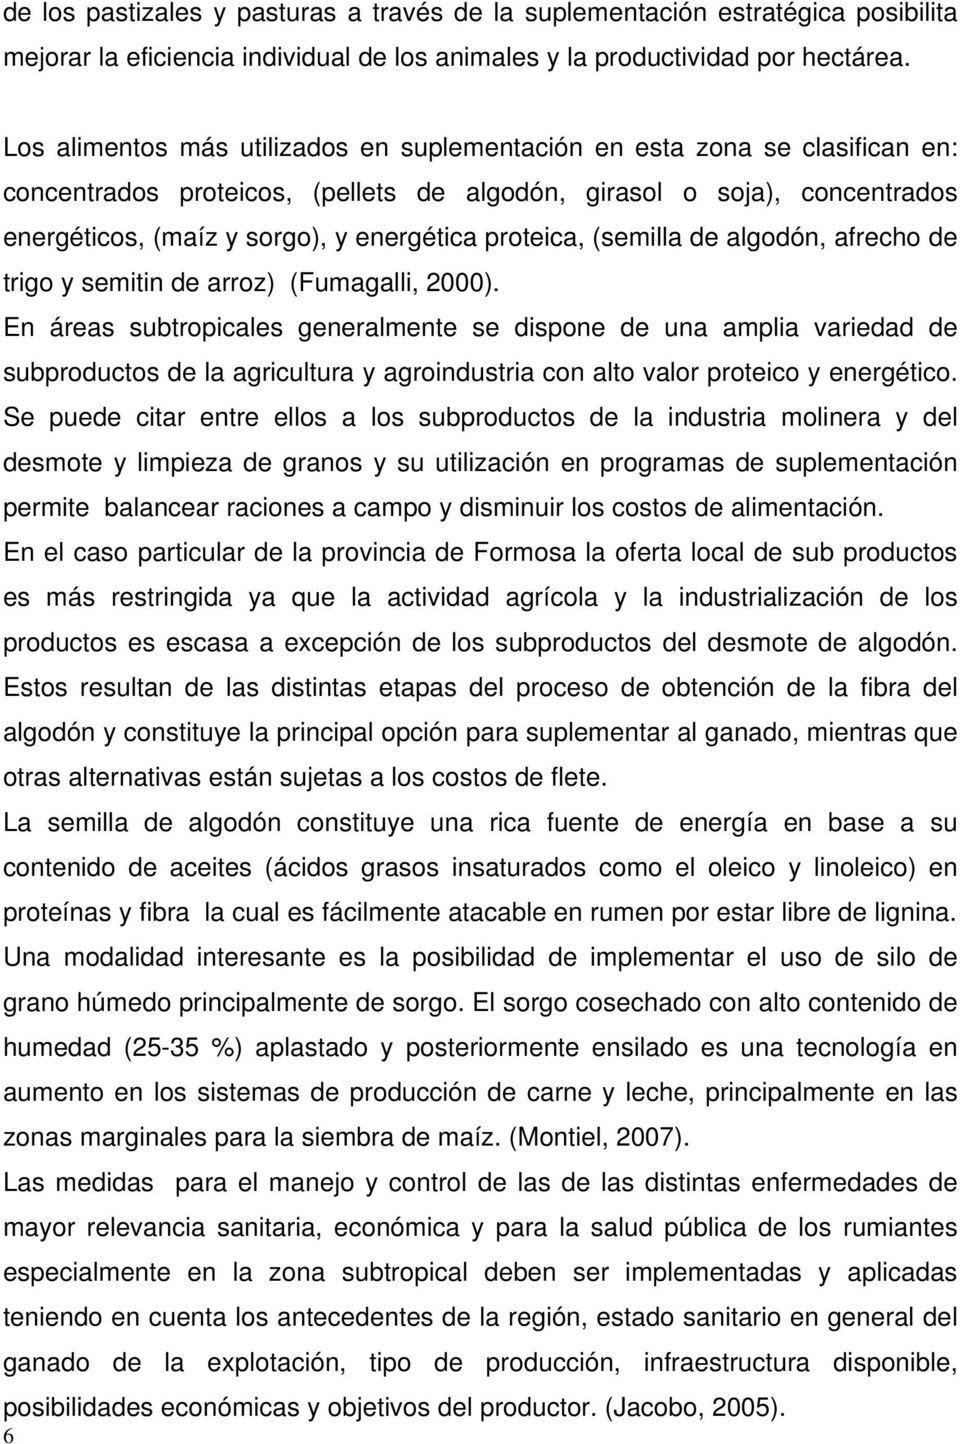 proteica, (semilla de algodón, afrecho de trigo y semitin de arroz) (Fumagalli, 2000).